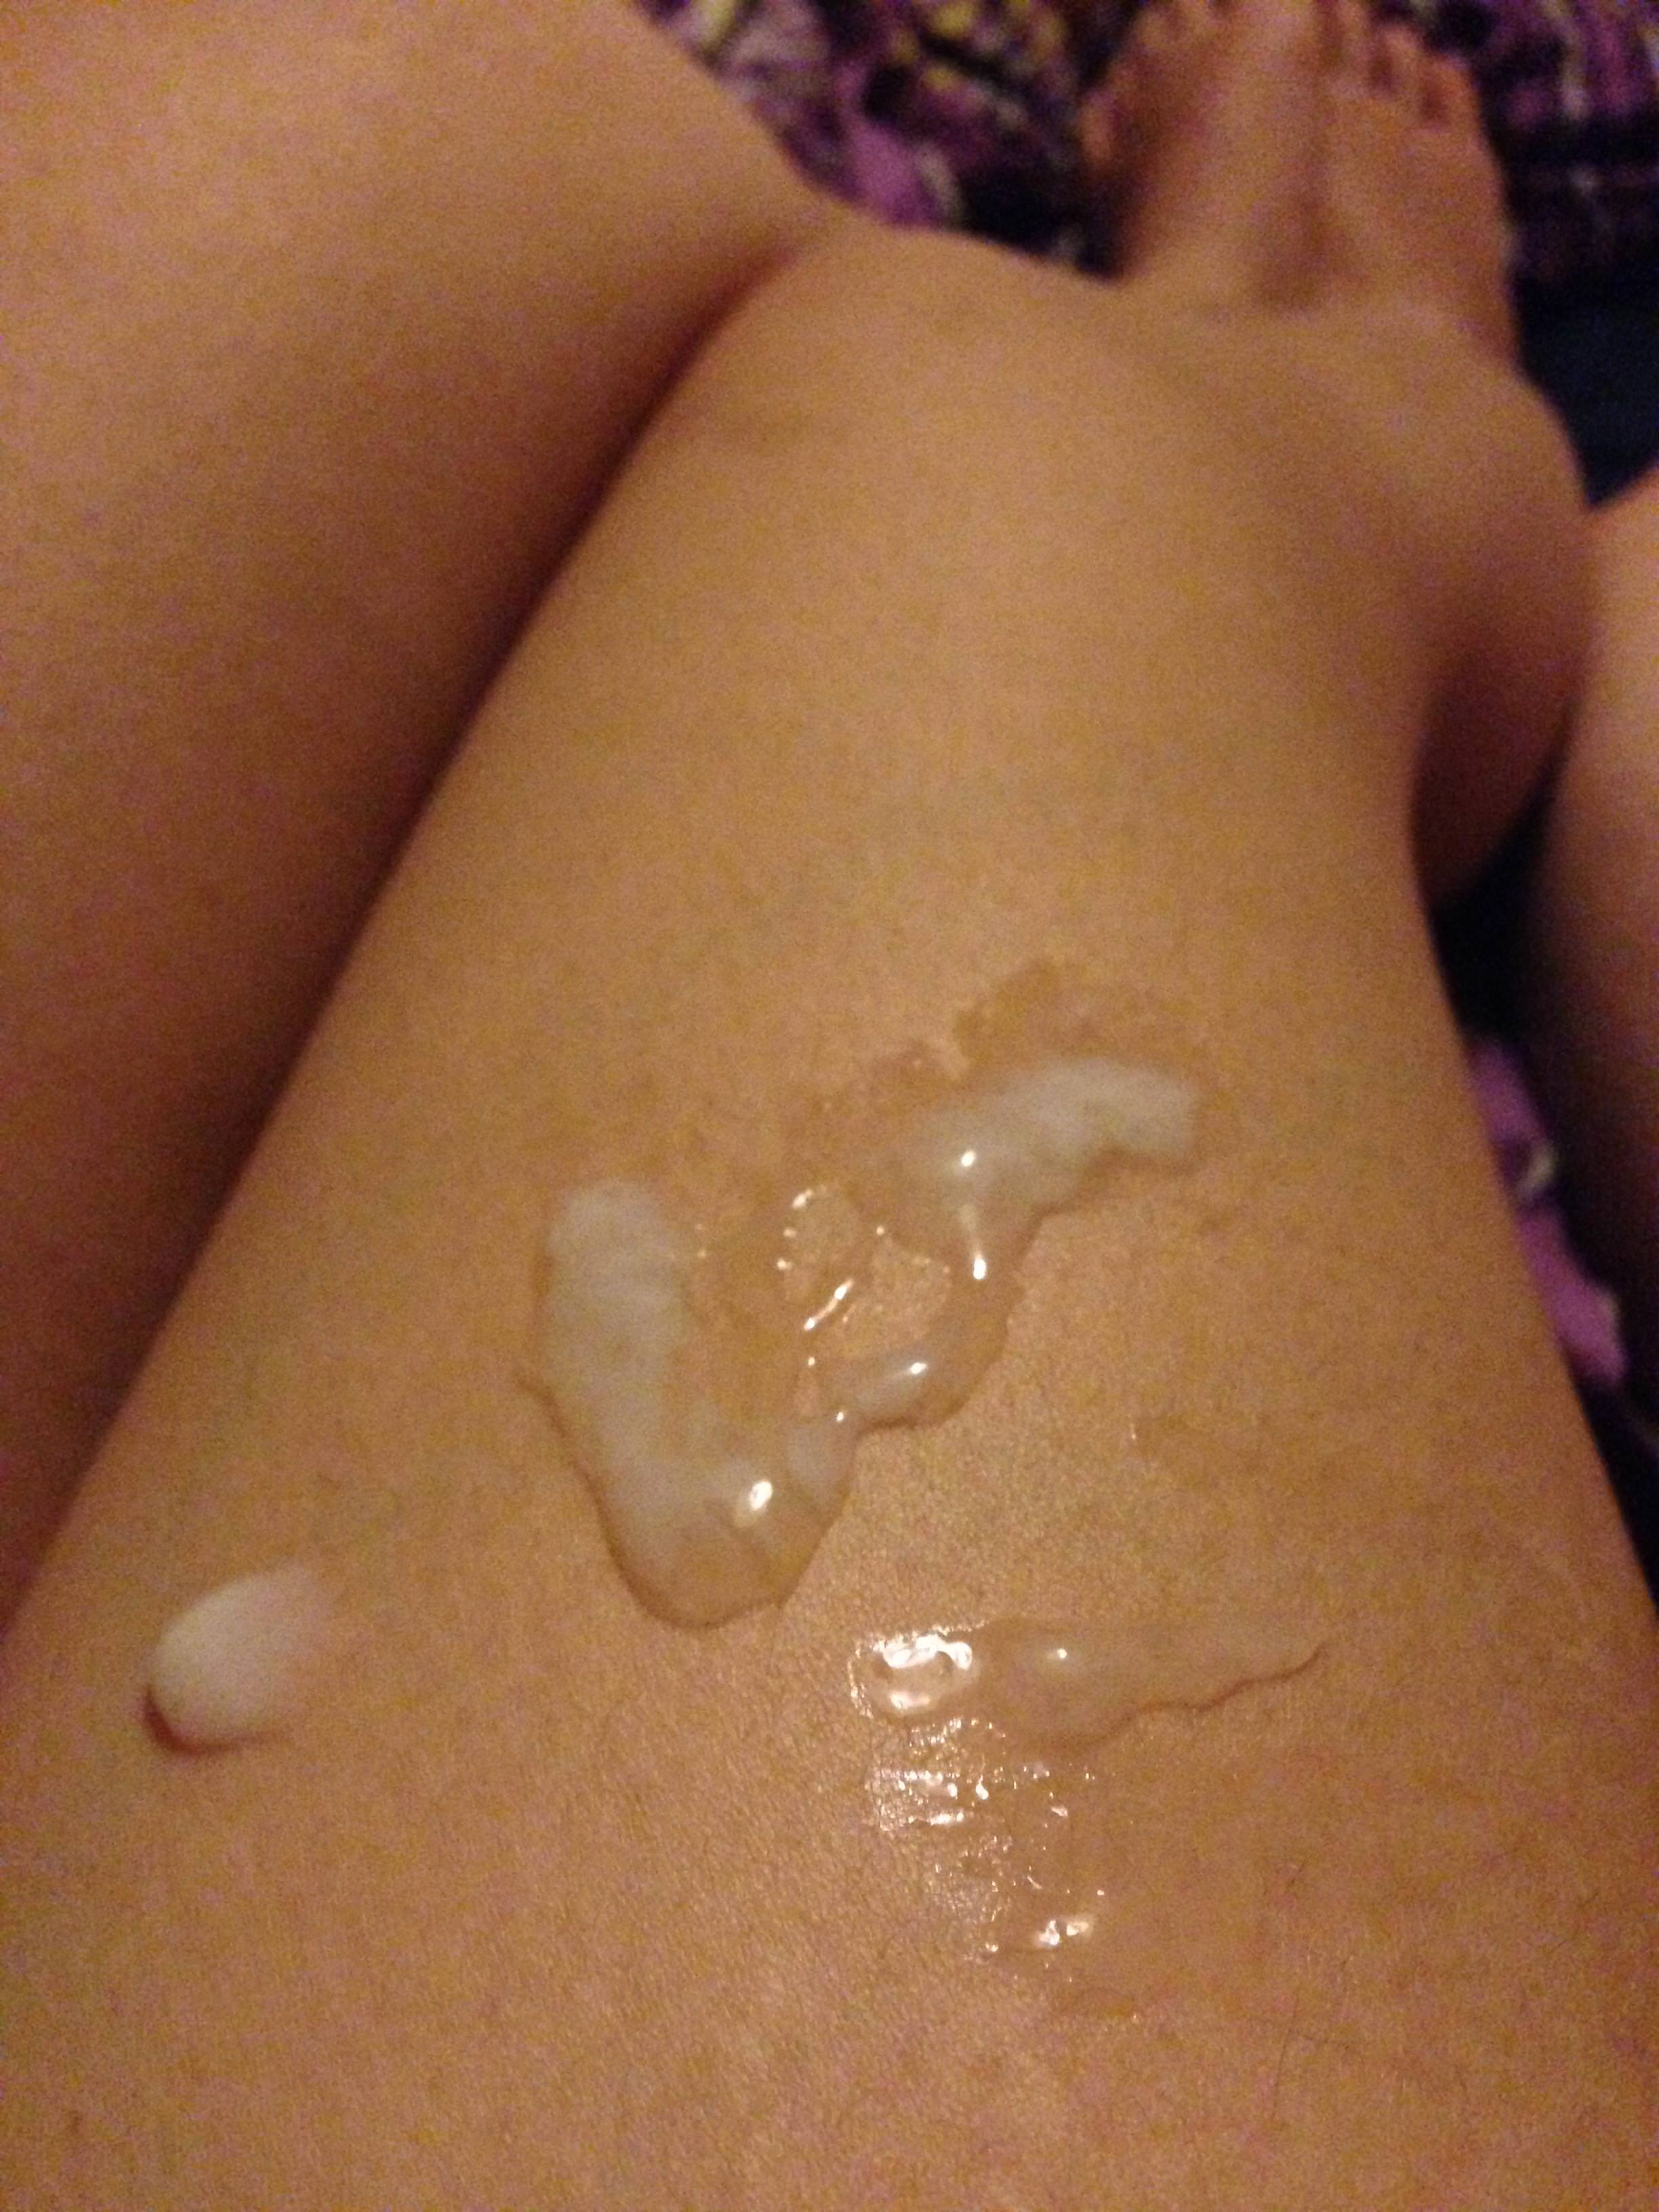 Love A Little Cum On My Leg Would